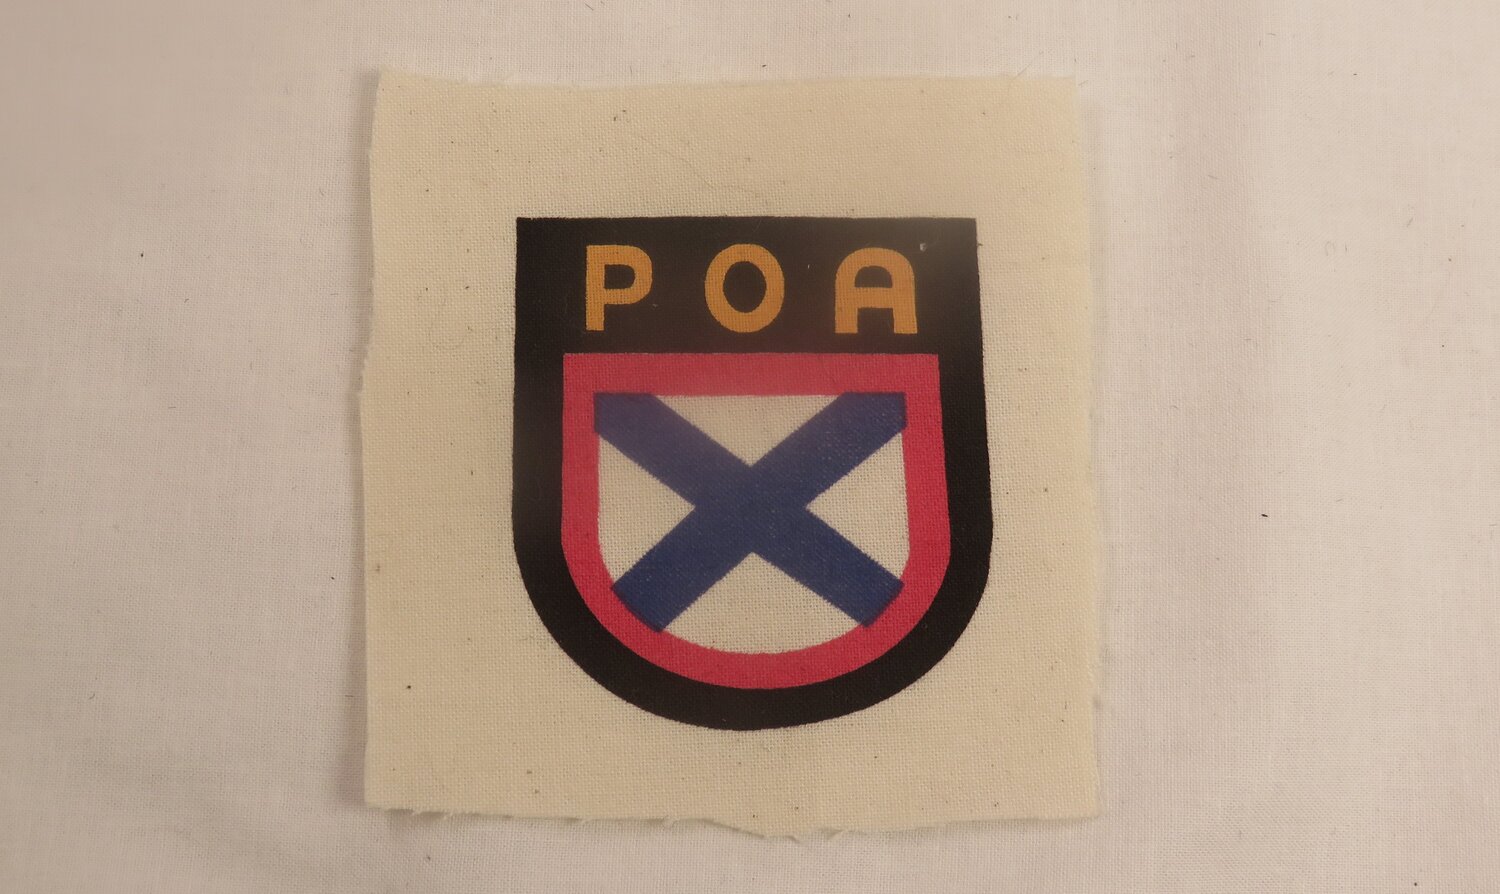 Ww2 German Cloth Insignia original trade badge 